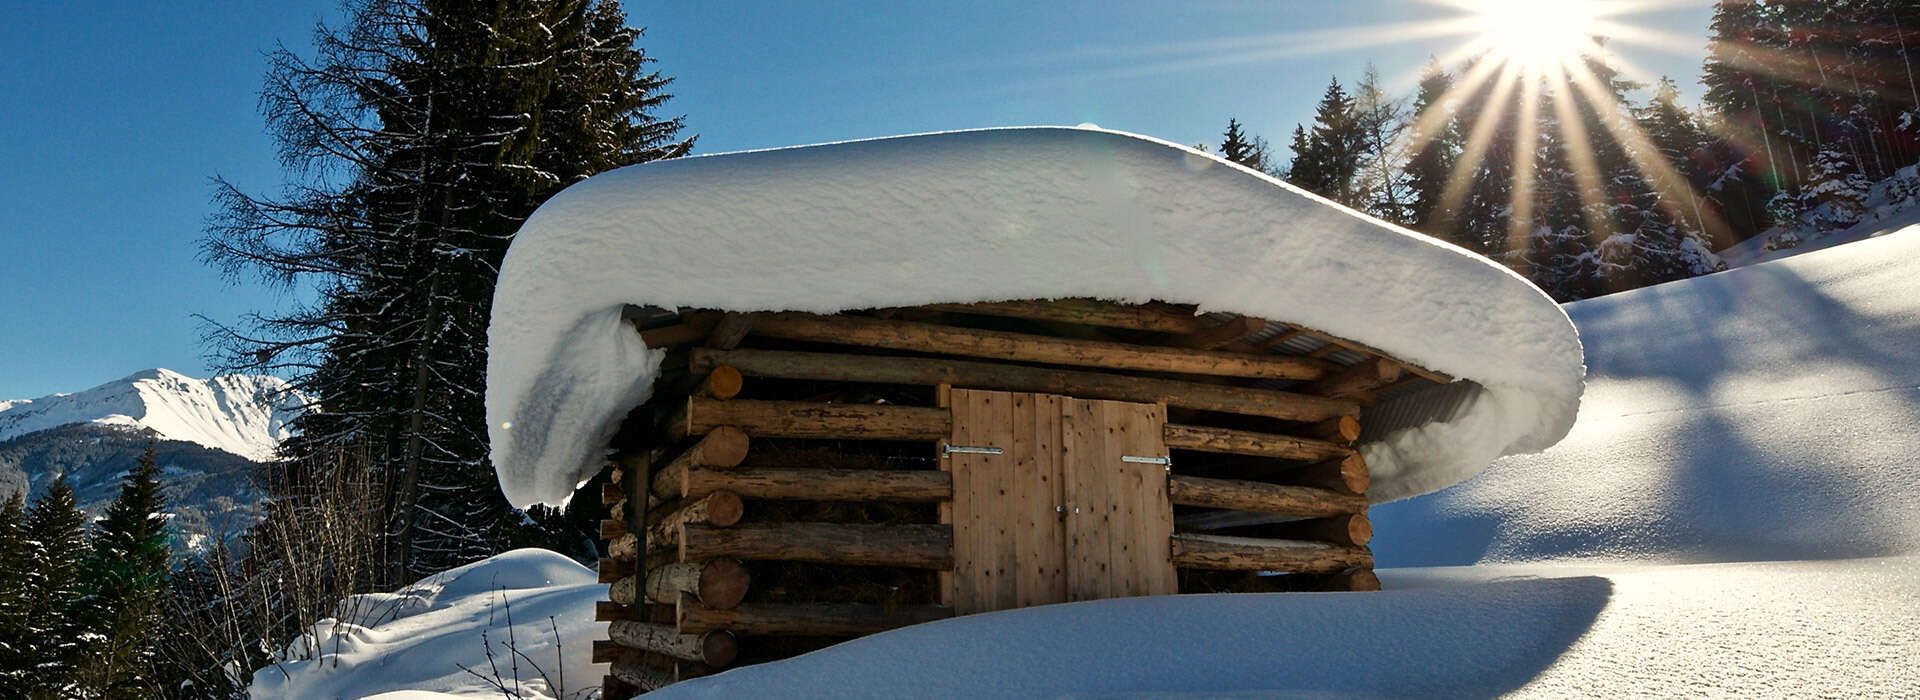   wooden hut in winter